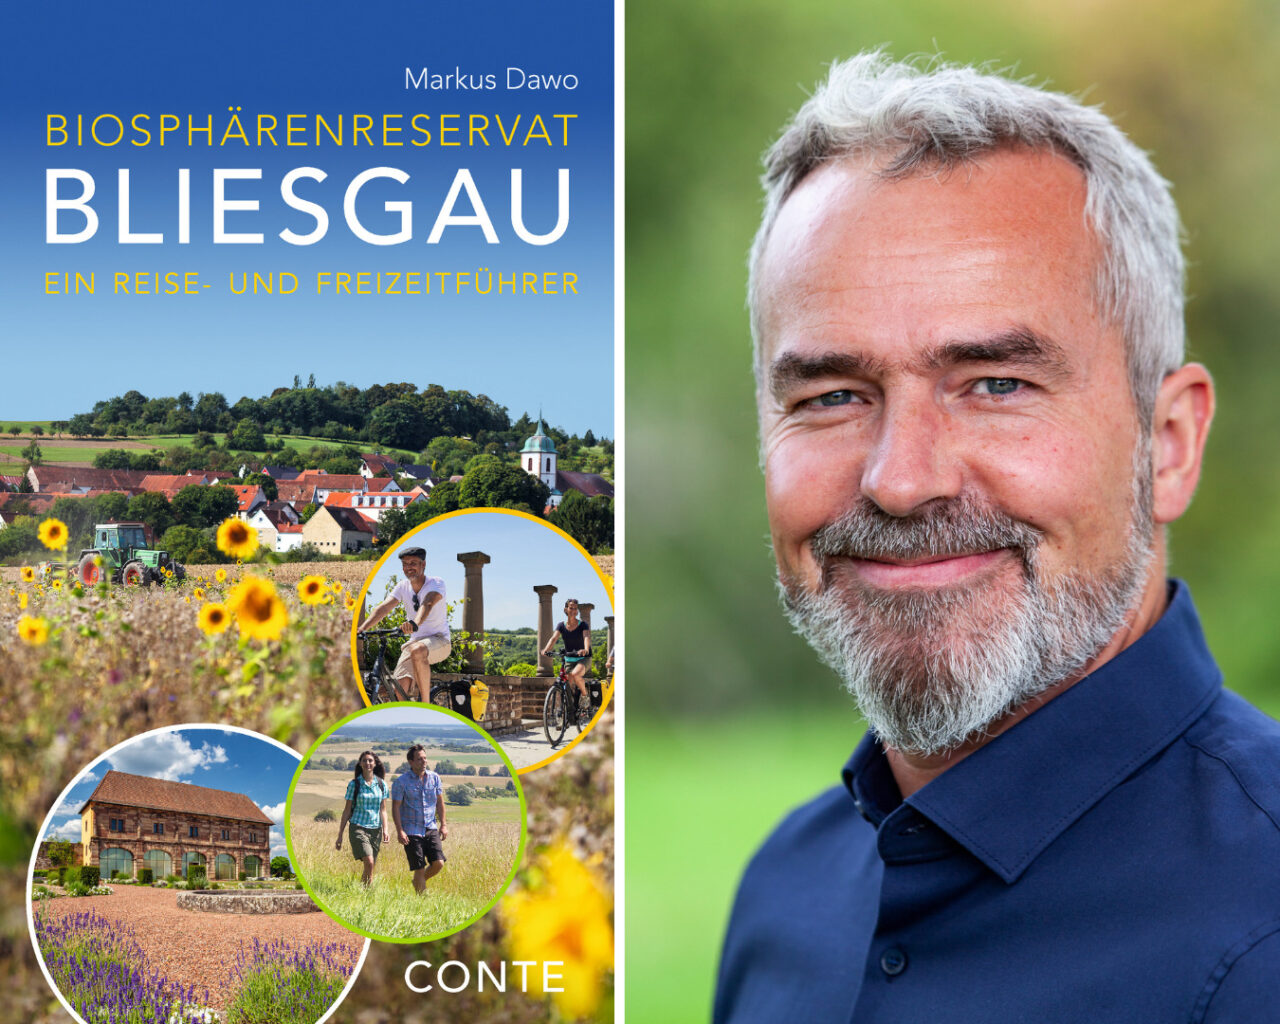 Reiseführer „Biosphärenreserverat Bliesgau“ von Markus Dawo, Conte Verlag St. Ingbert (Foto: Stefan Wirtz)